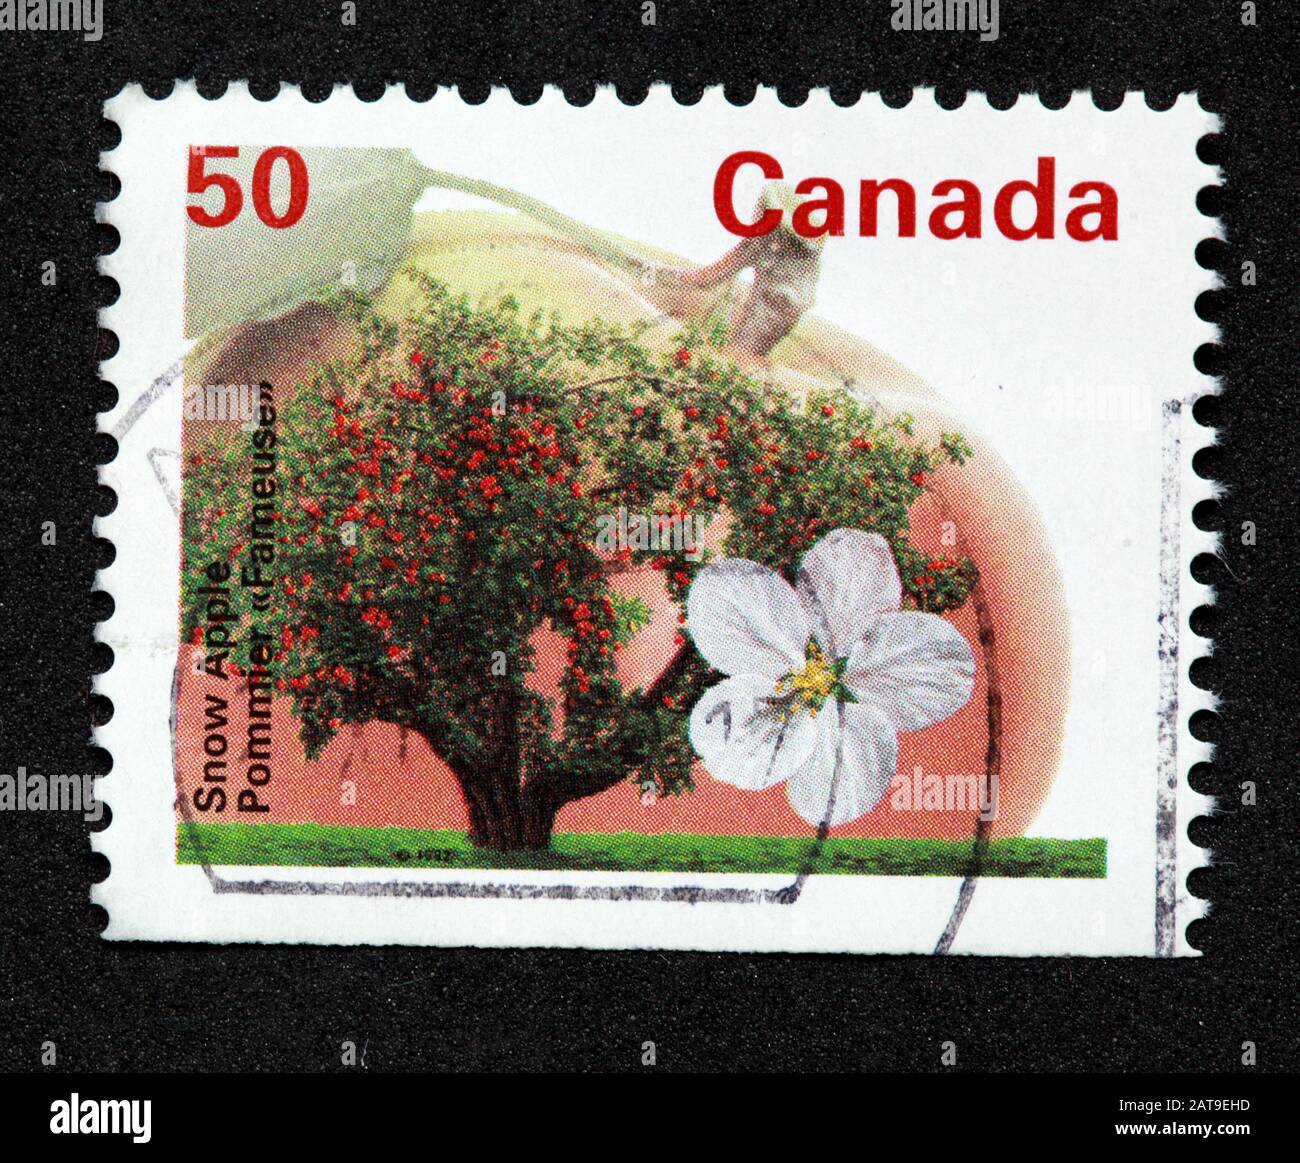 Timbro canadese, Canada Stamp, Canada Post, usato Stamp, Canada 50c, 50cent,, neve Apple, fiore, albero Foto Stock